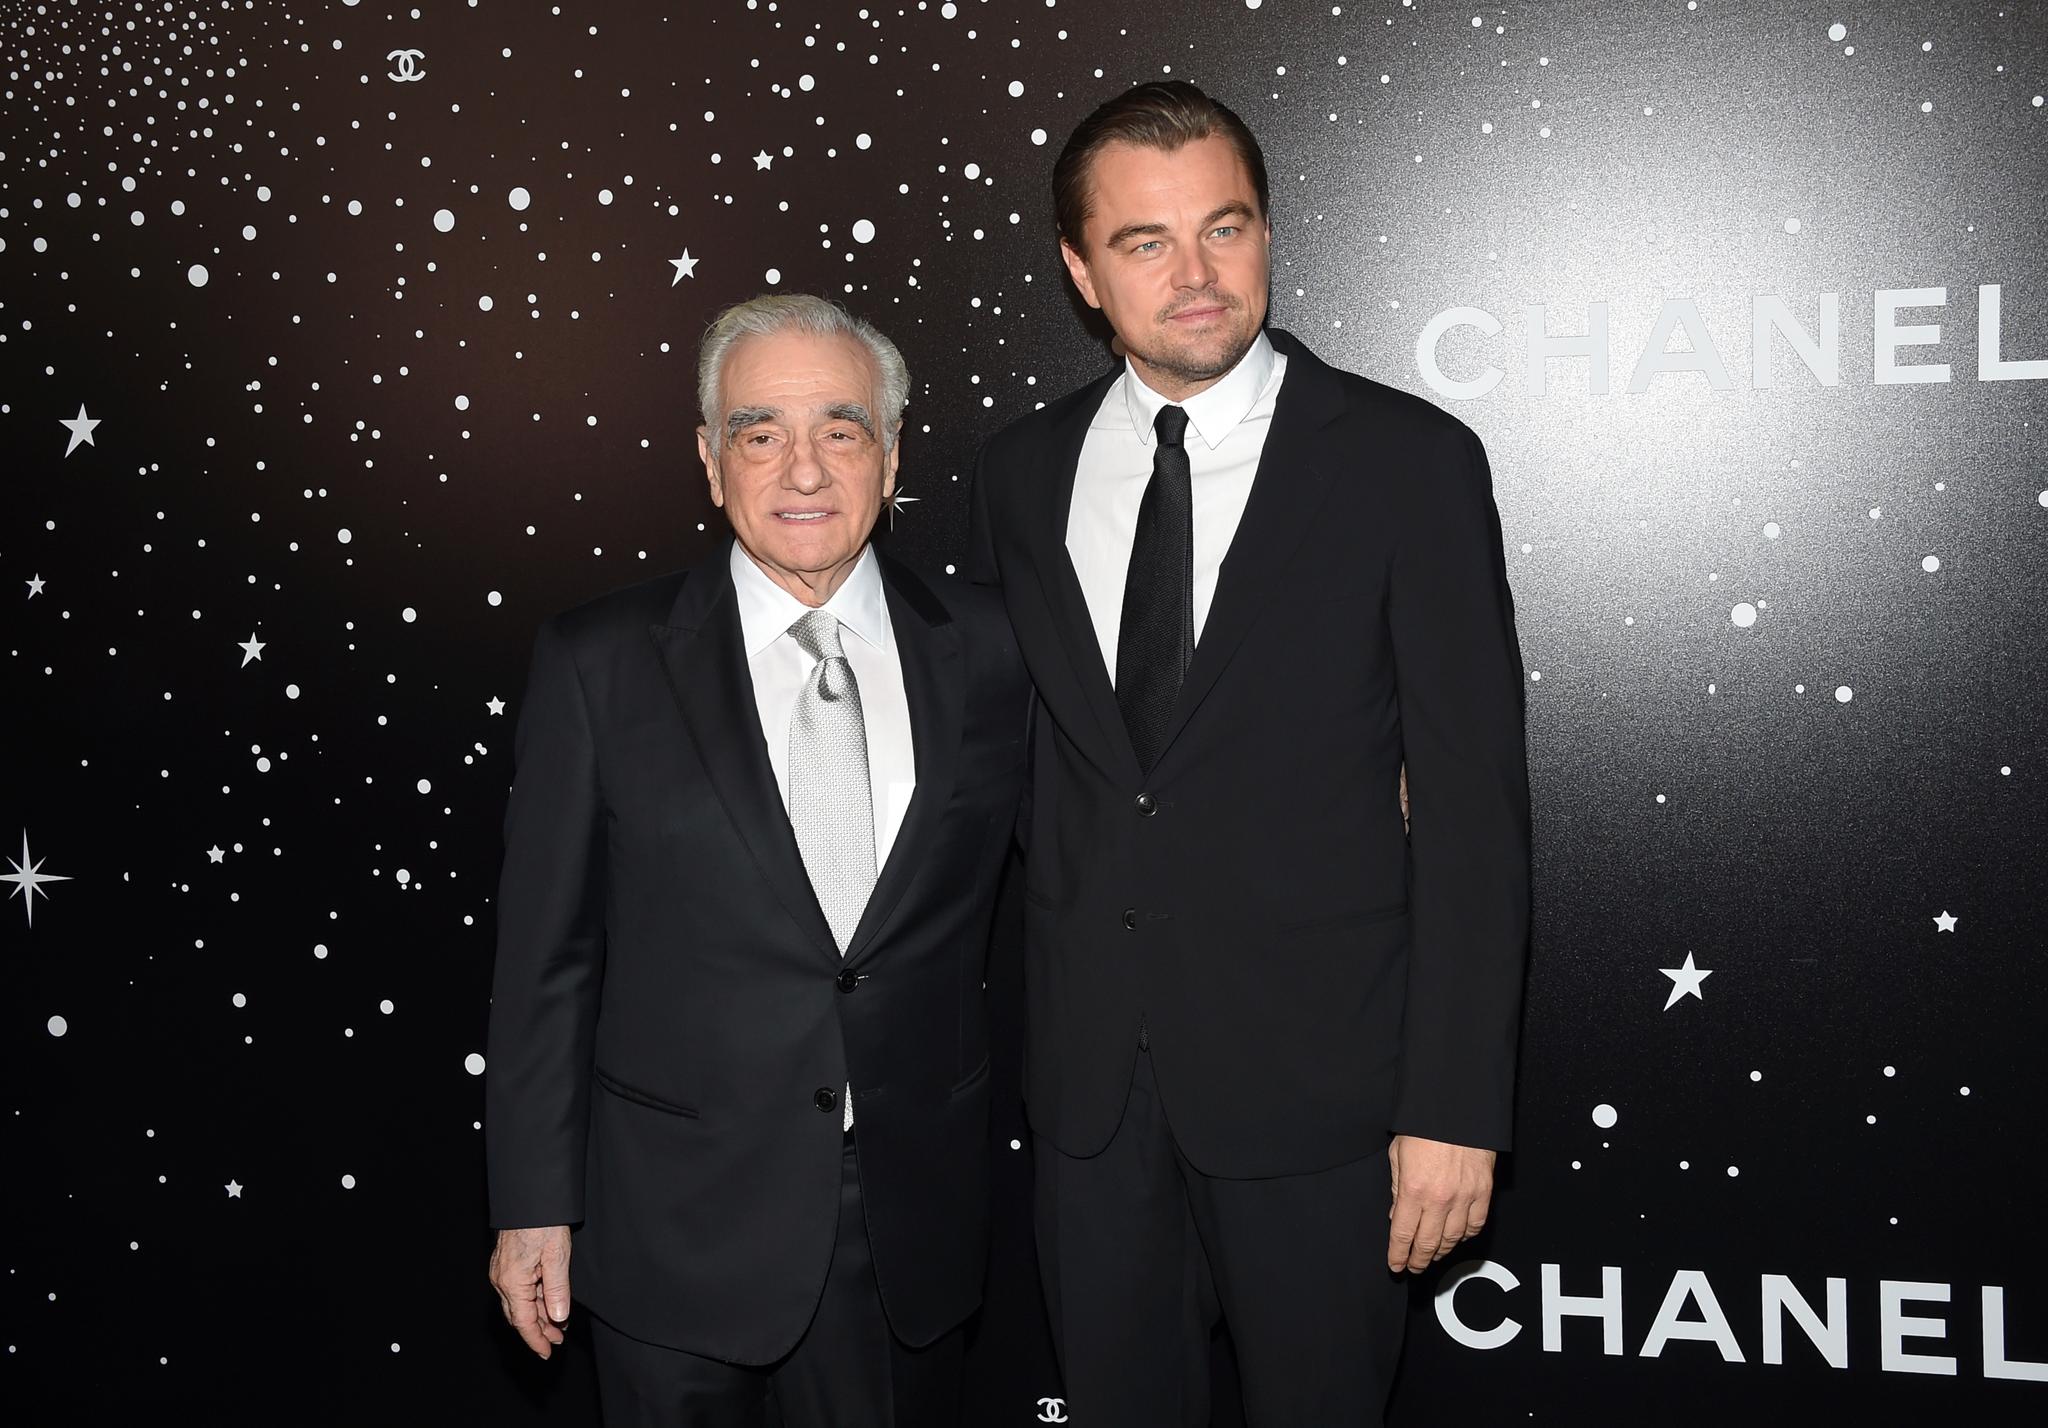 Filmen The Wolf of Wall Street ble regissert av Martin Scorsese. Leonardo DiCaprio spilte hovedrollen. Filmen er nå en del av 1MDB-skandalen.